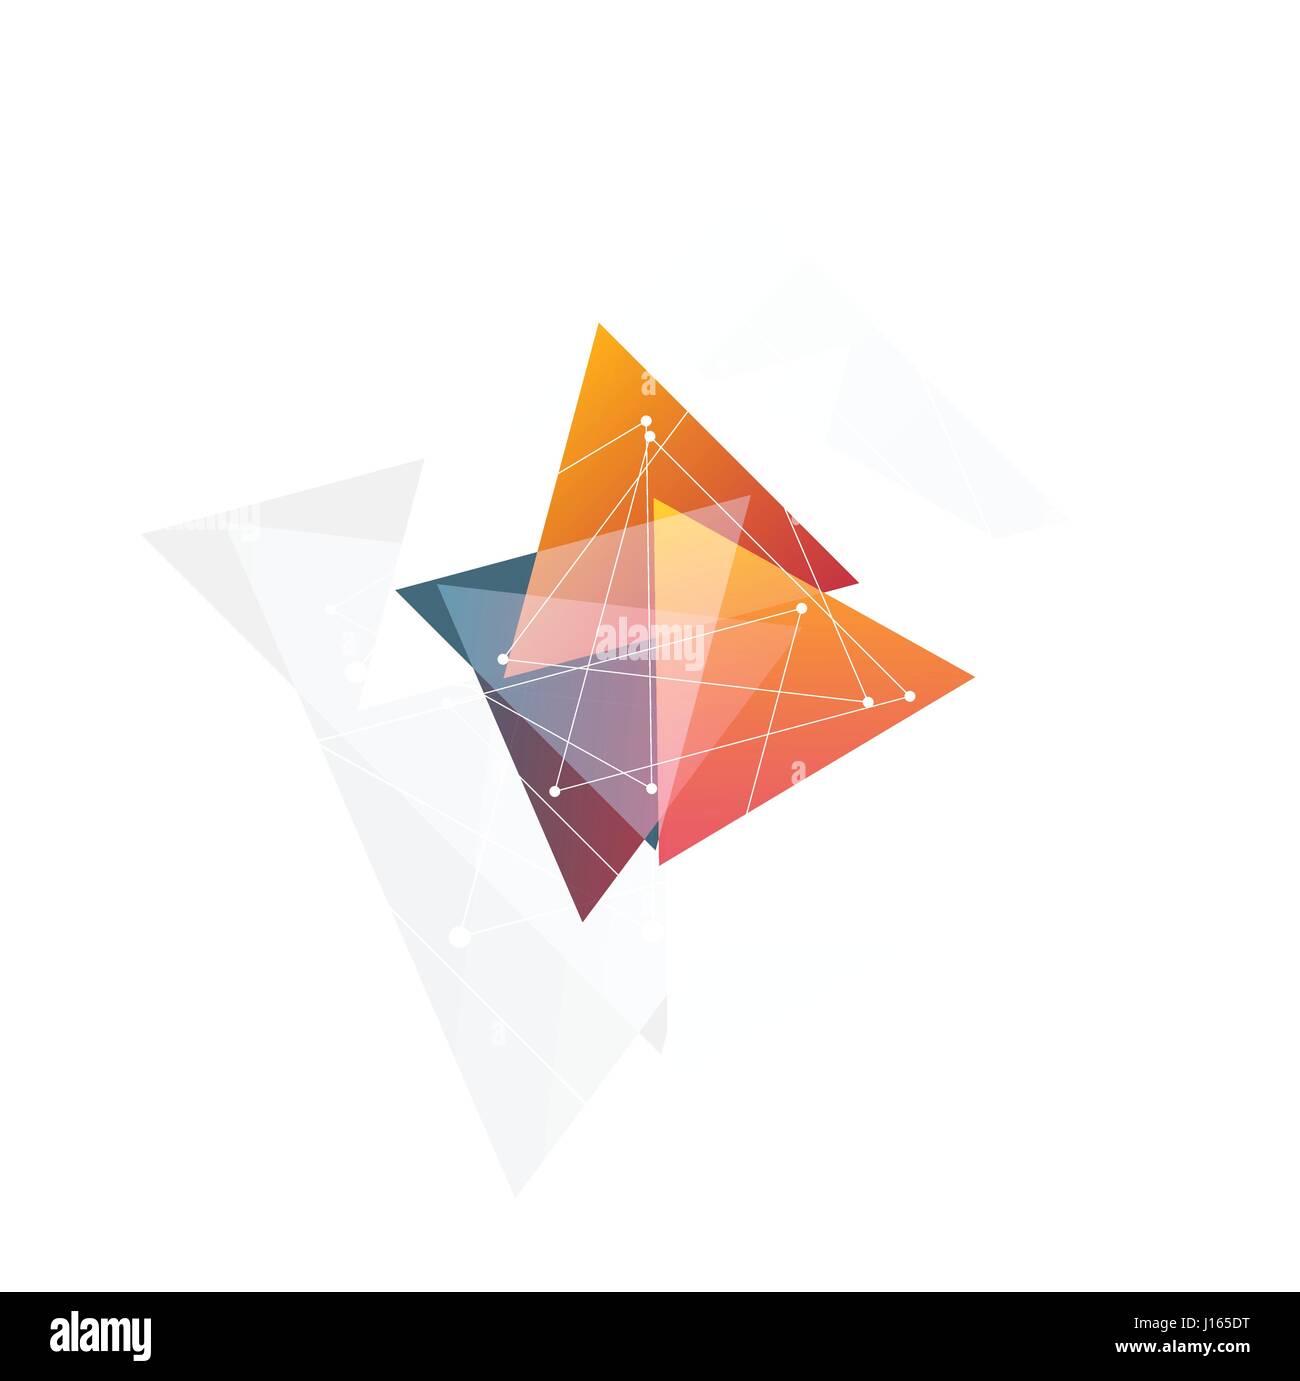 Isolierte abstrakte Pink und Orange Farbe Dreieck-Logo auf schwarzem Hintergrund, geometrische Dreiecksform Schriftzug transparente Überlagerungen Vektor-illustration Stock Vektor